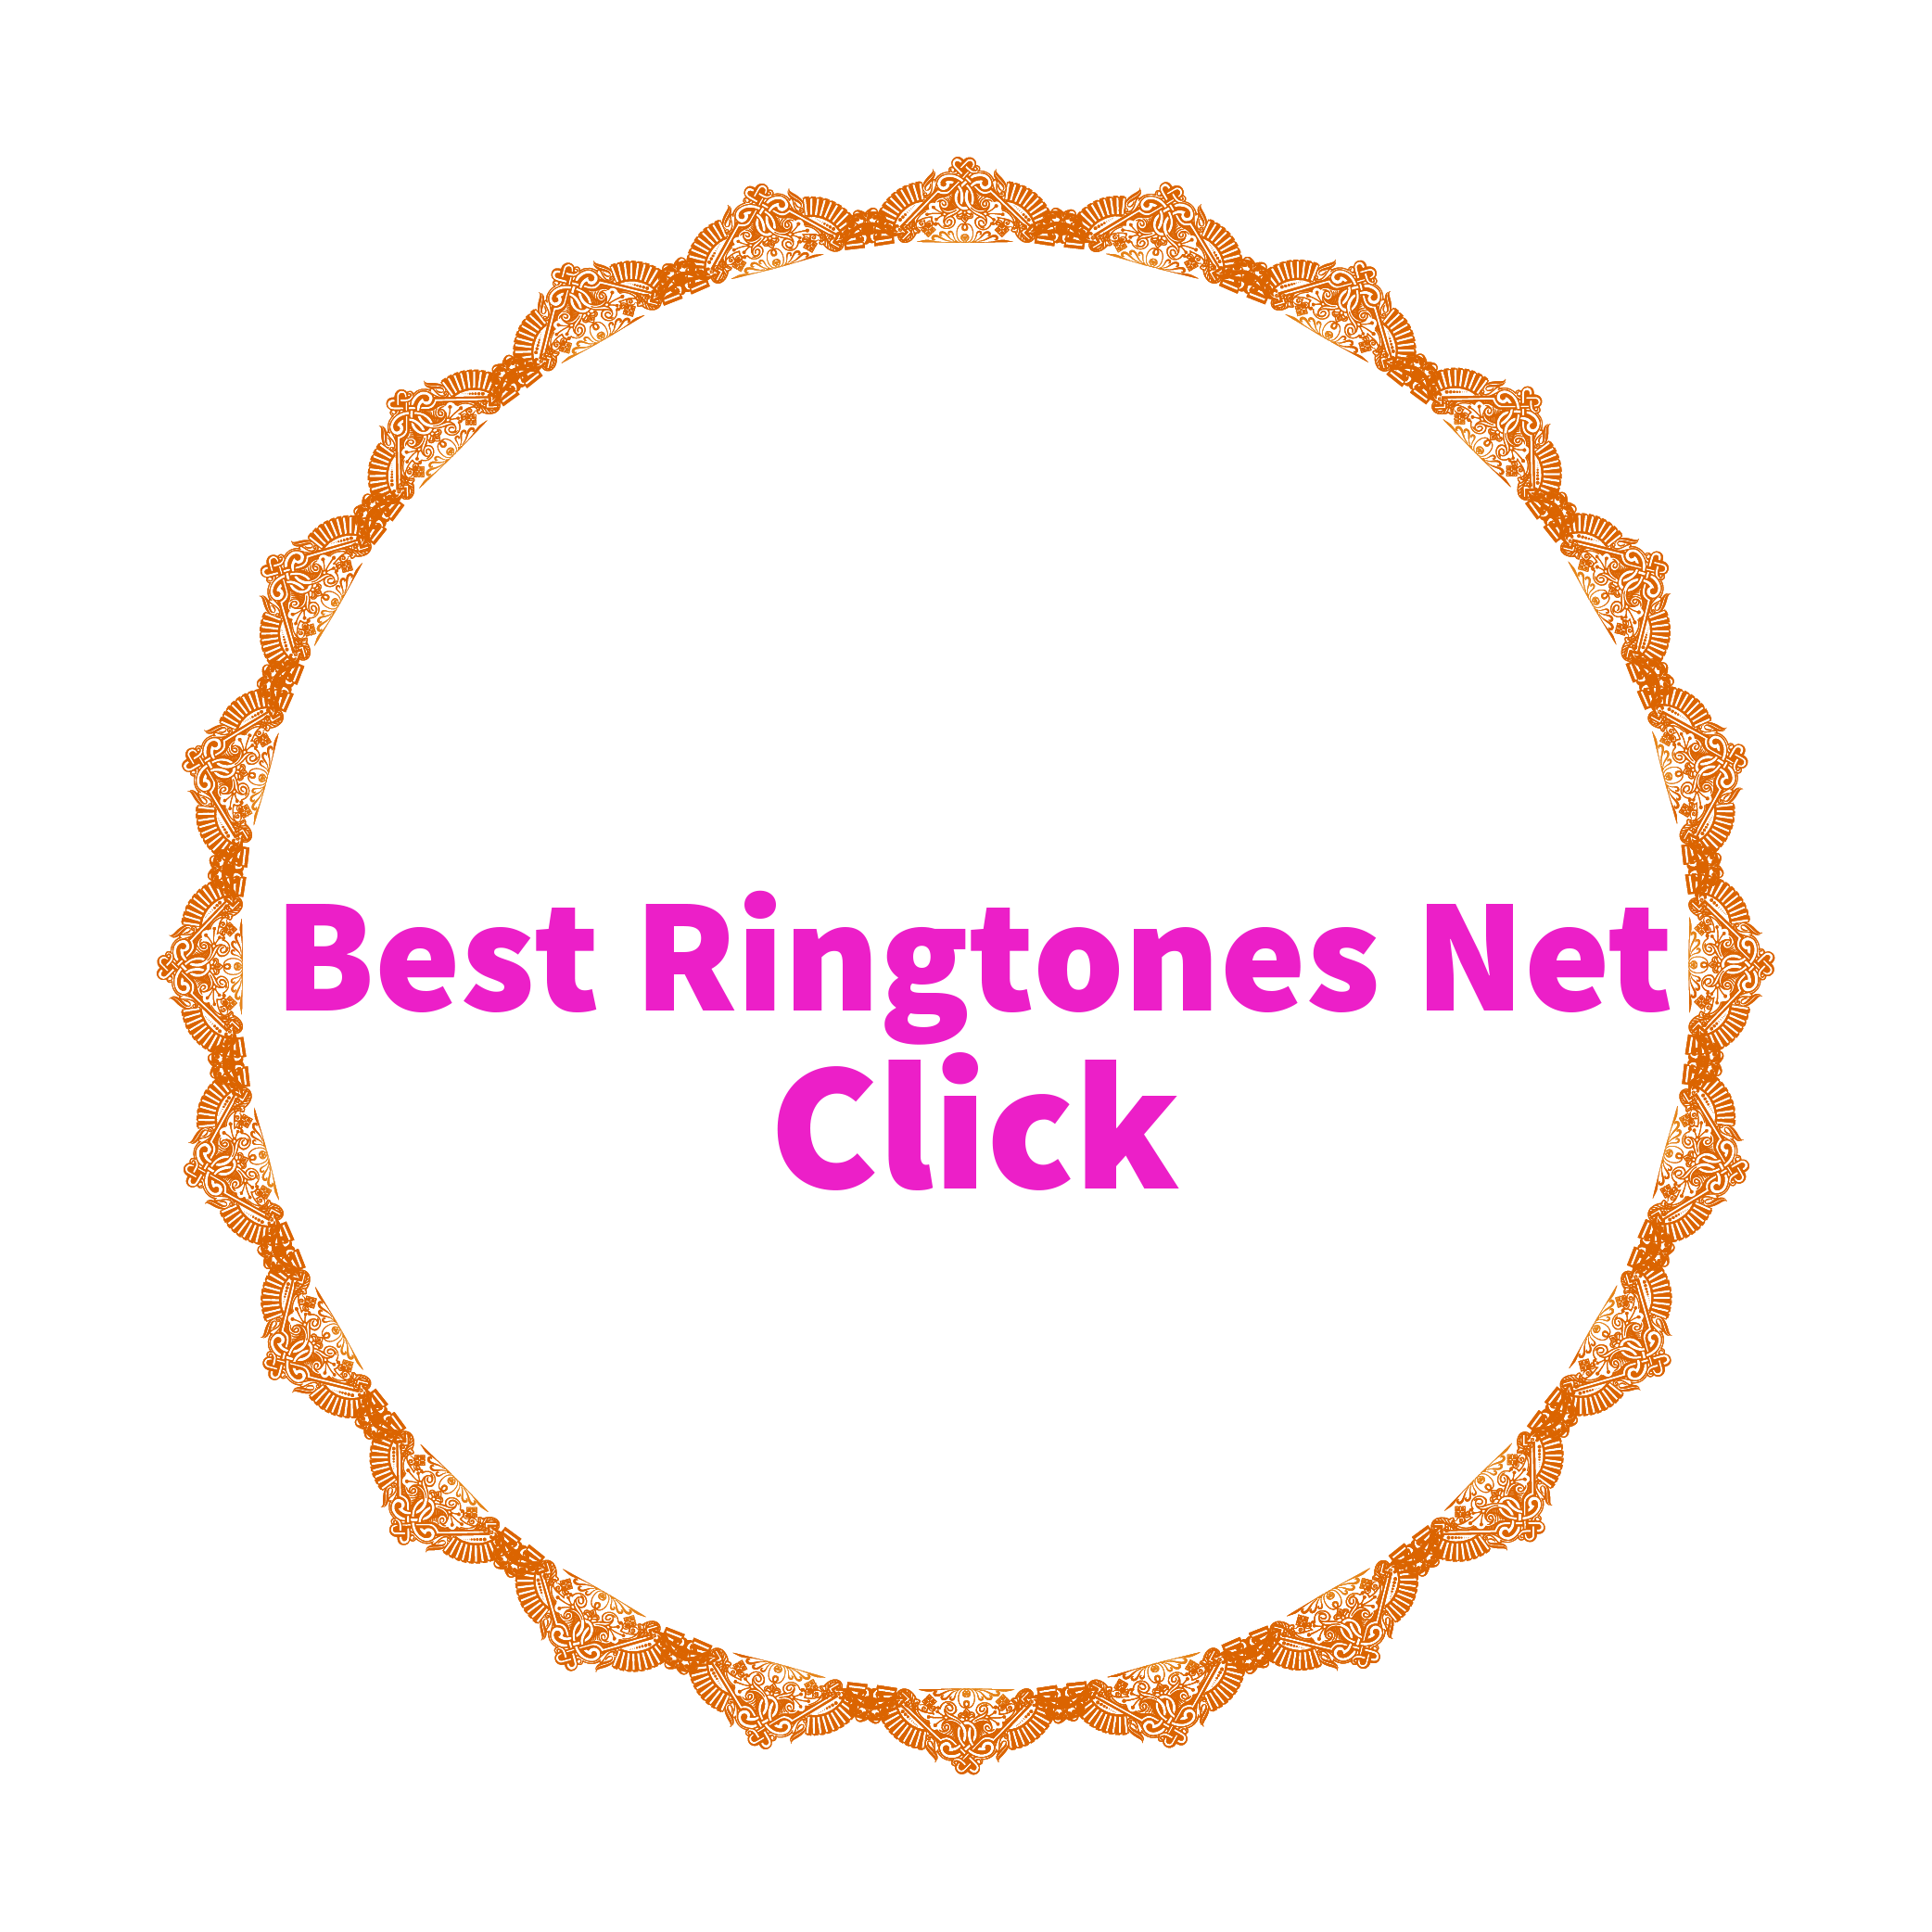 Best Ringtones Net Click- Ringtone Download – Best Ringtone Download MP3